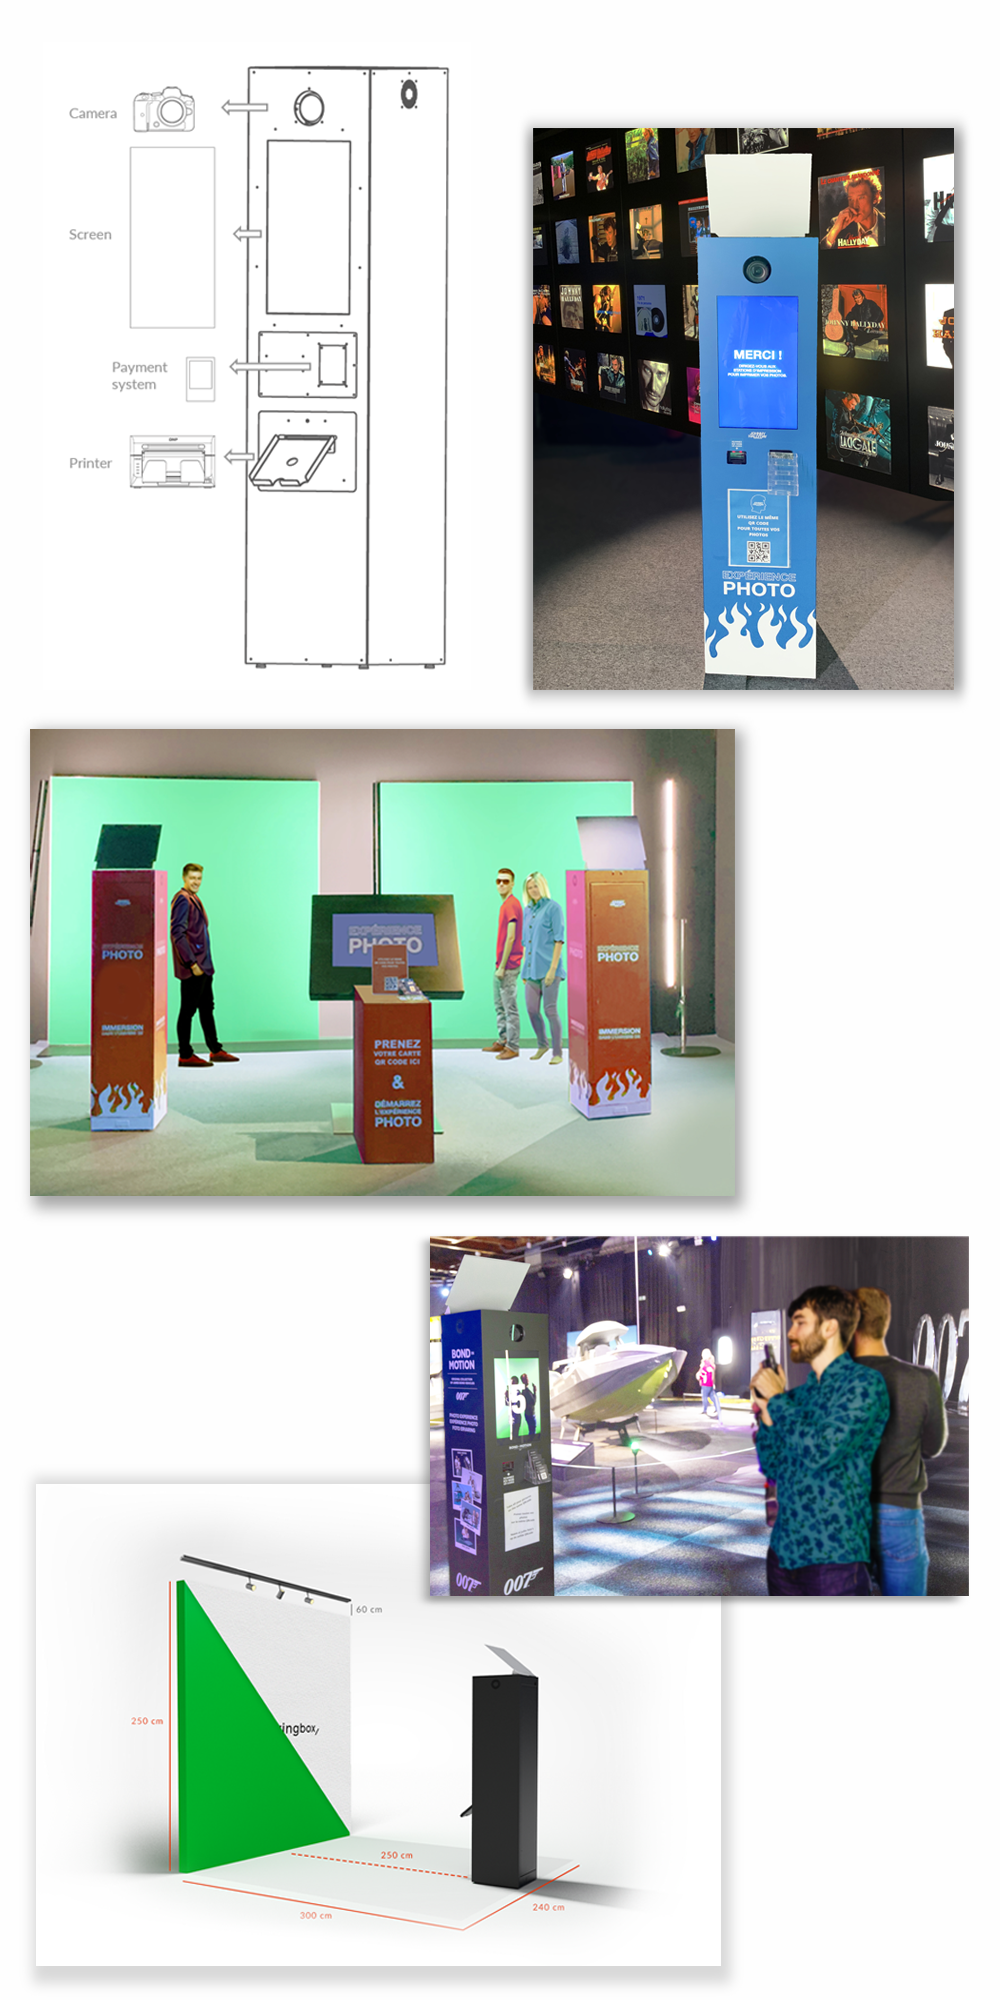 Der Kiosk-Photobooth in der Collage